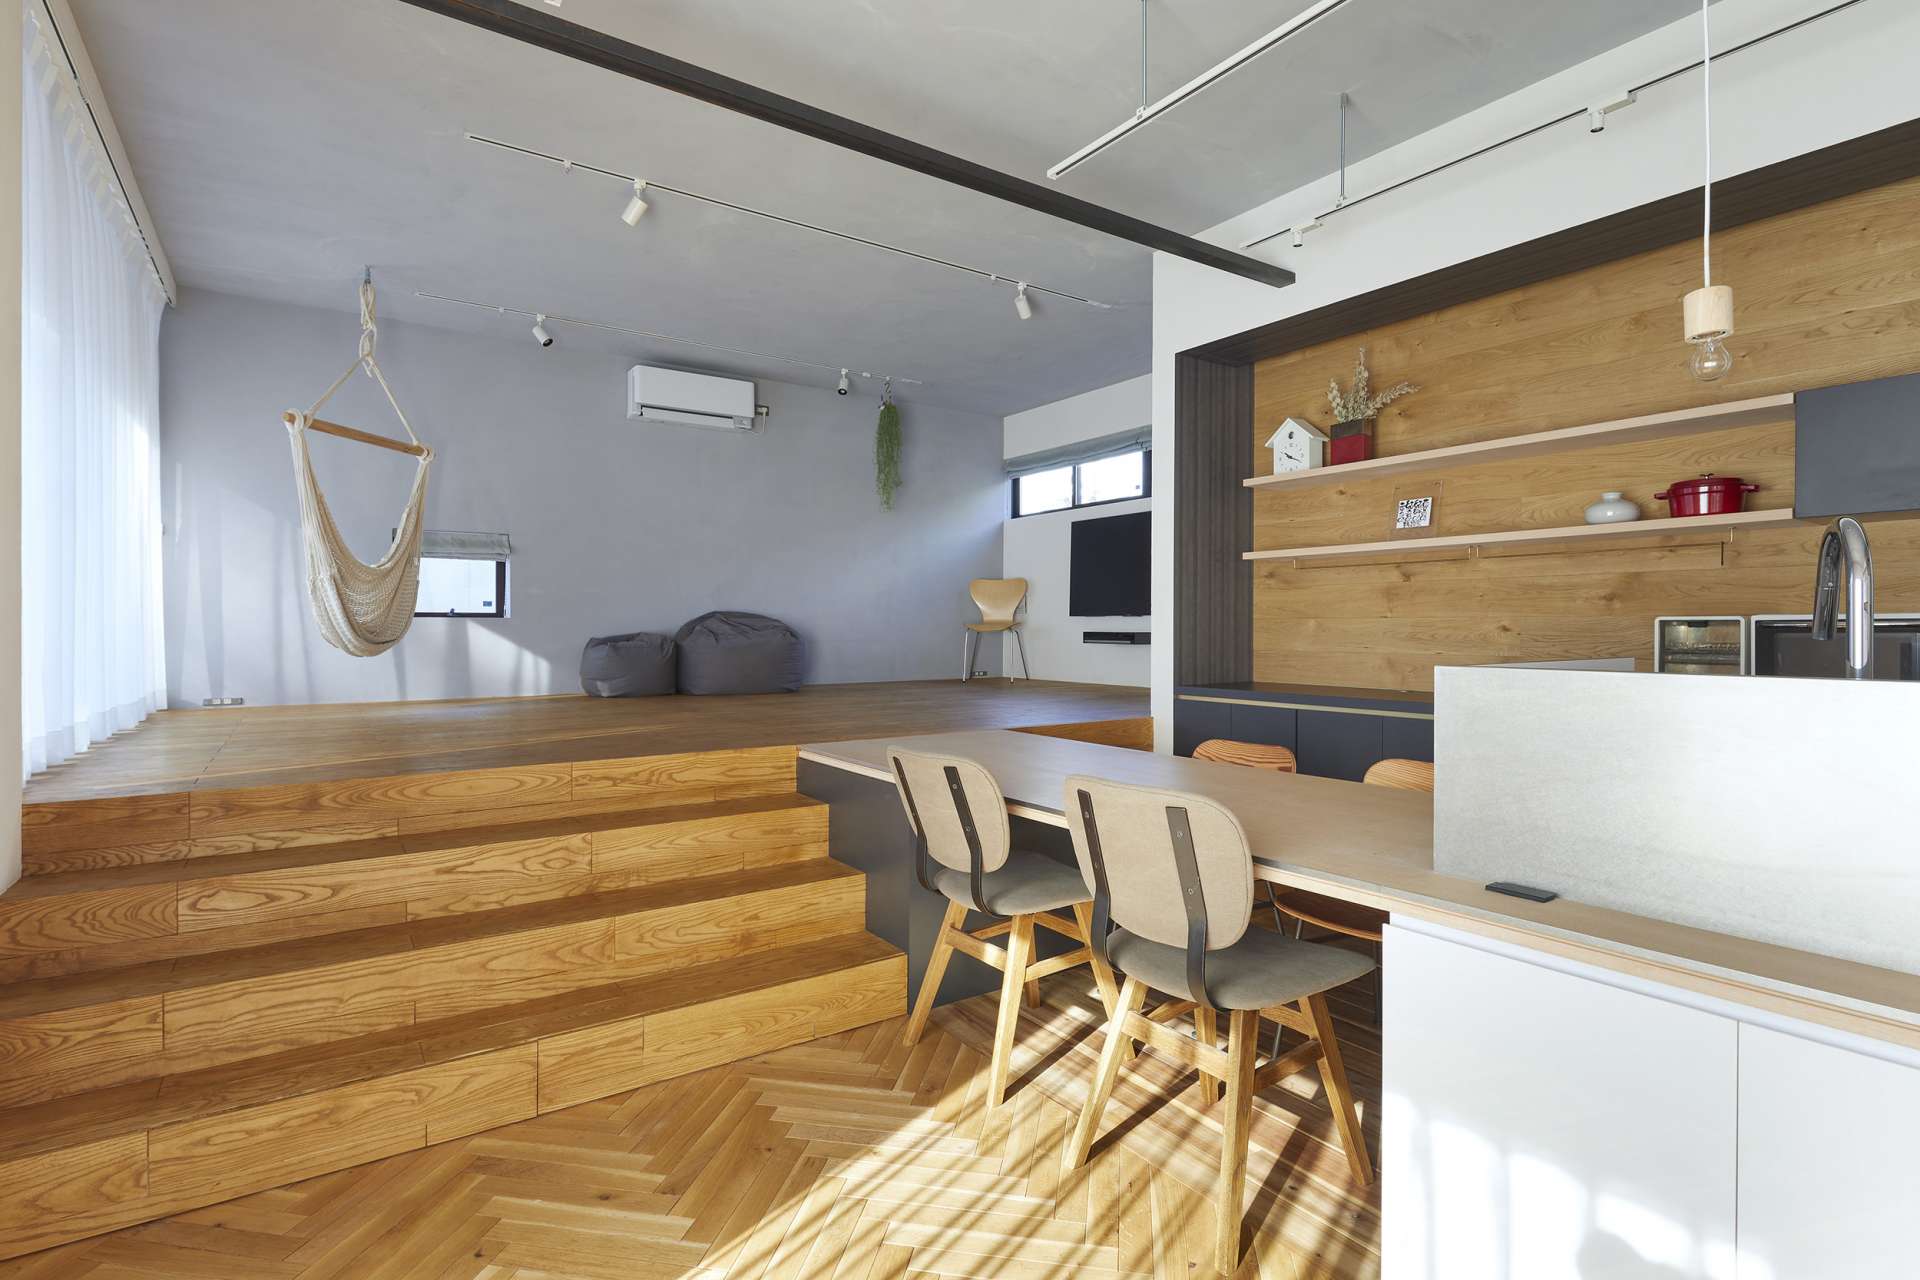 ハウスメーカーでも工務店でもない広島の設計事務所とつくるおしゃれな注文住宅、戸建てのリノベーション、マンションリノベーションはasazu design office